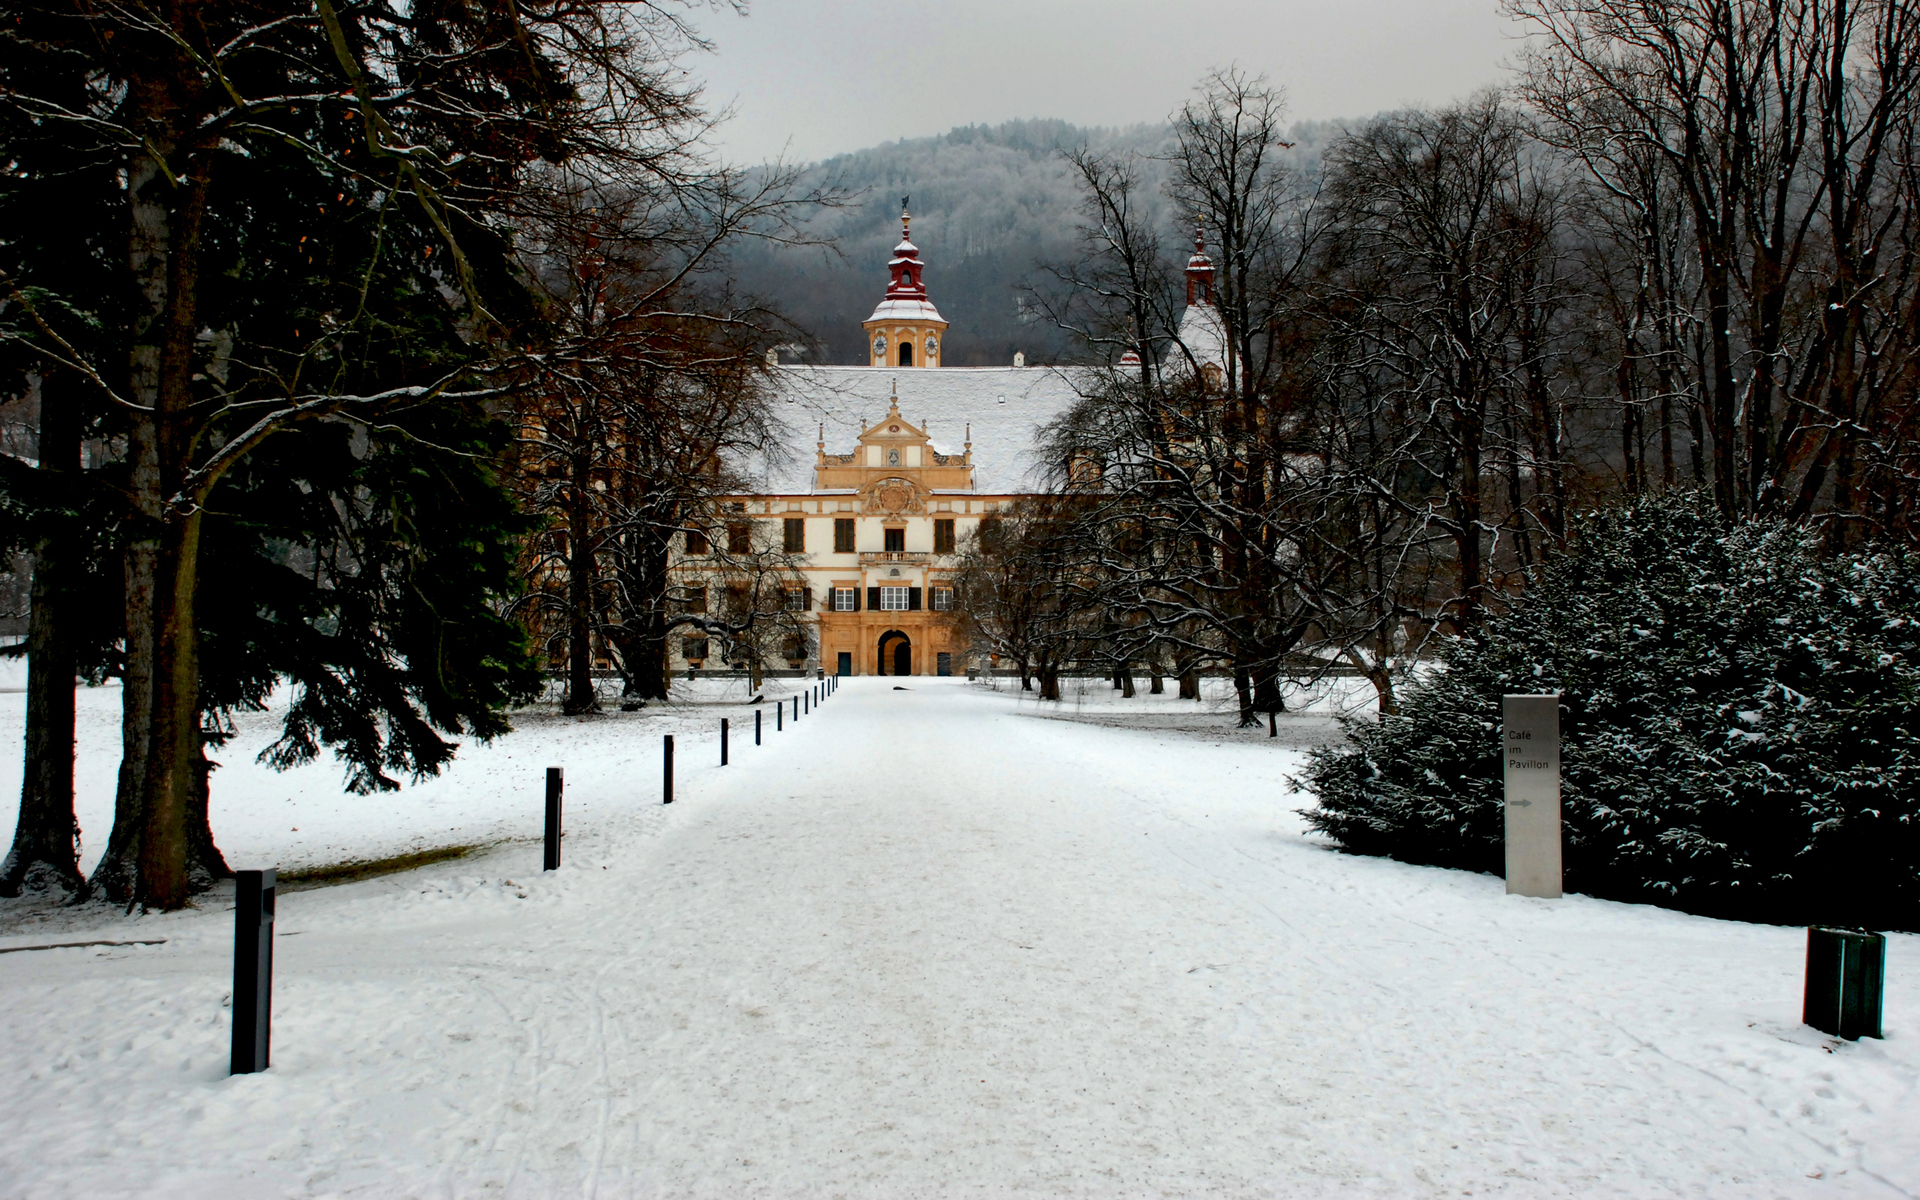 Скачать картинку Место, Австрия, Фотографии в телефон бесплатно.